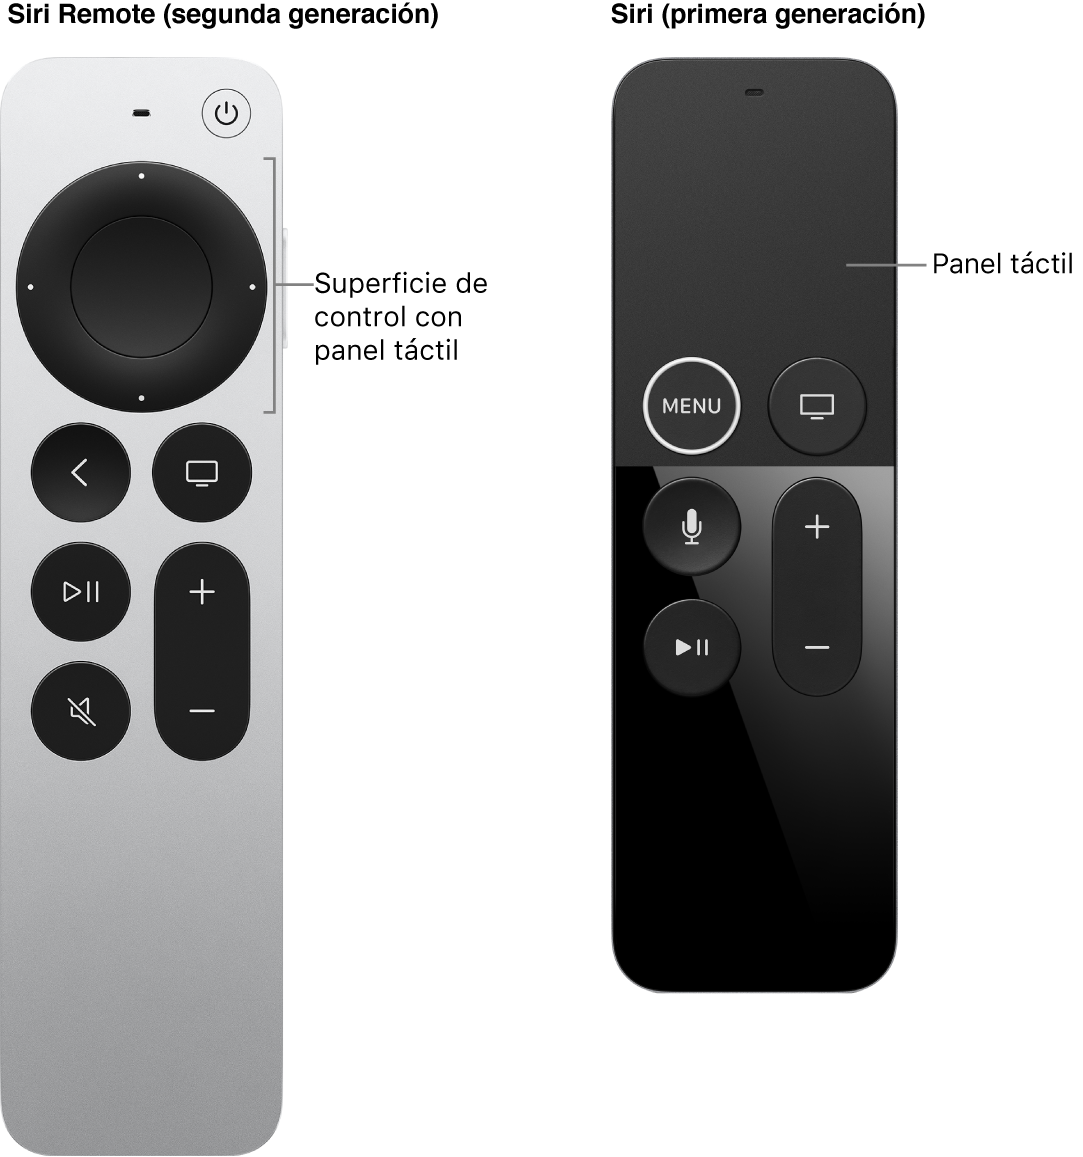 El Siri Remote (segunda generación) con superficie de control, y el Siri Remote (primera generación) con panel táctil